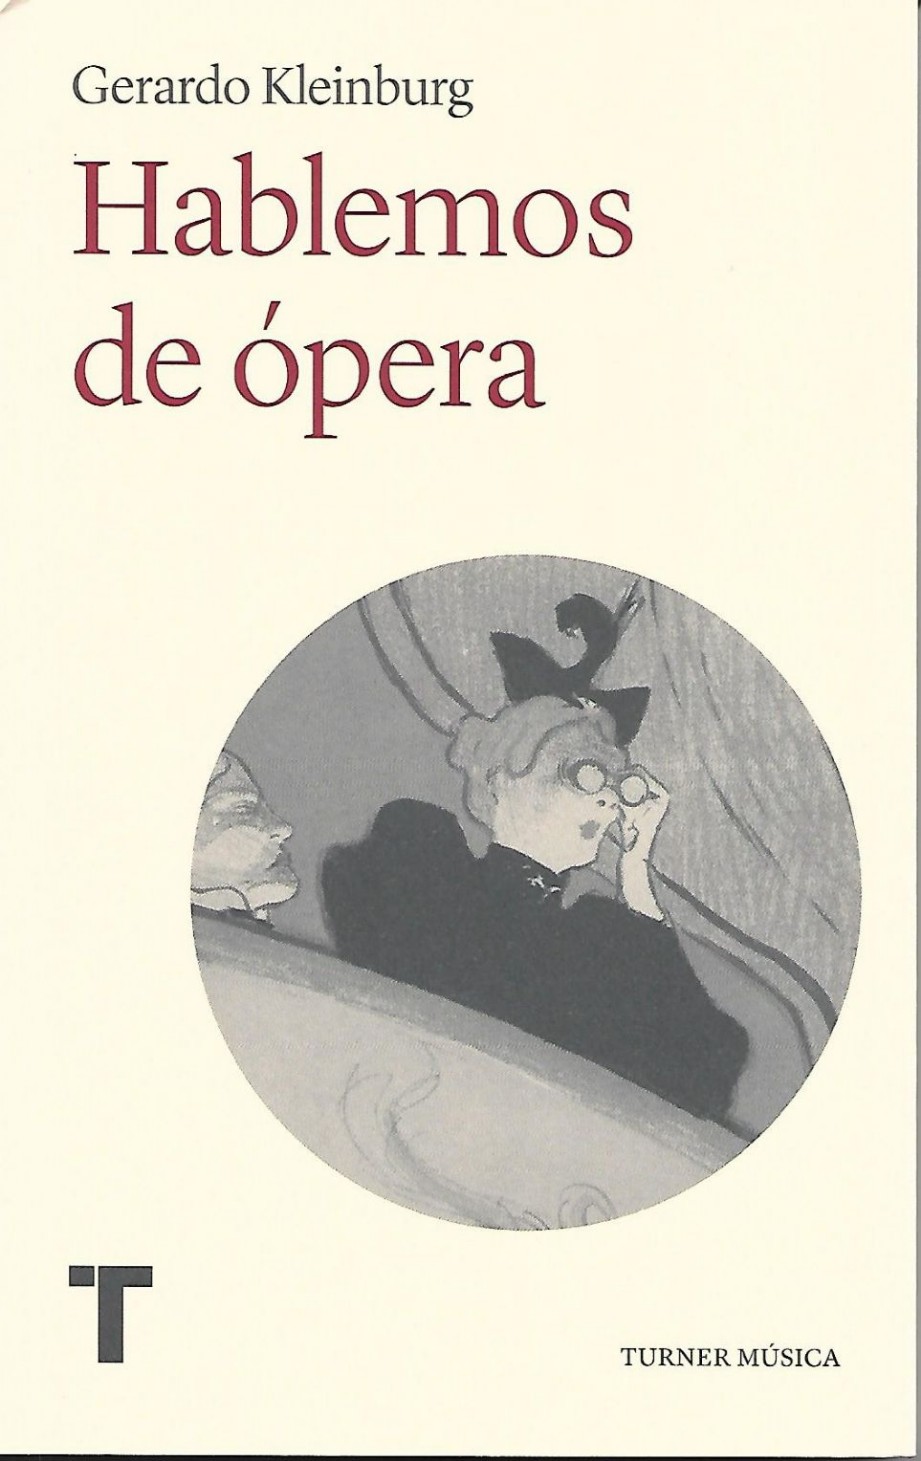 El libro «Hablemos de ópera» de Gerardo Kleinburg